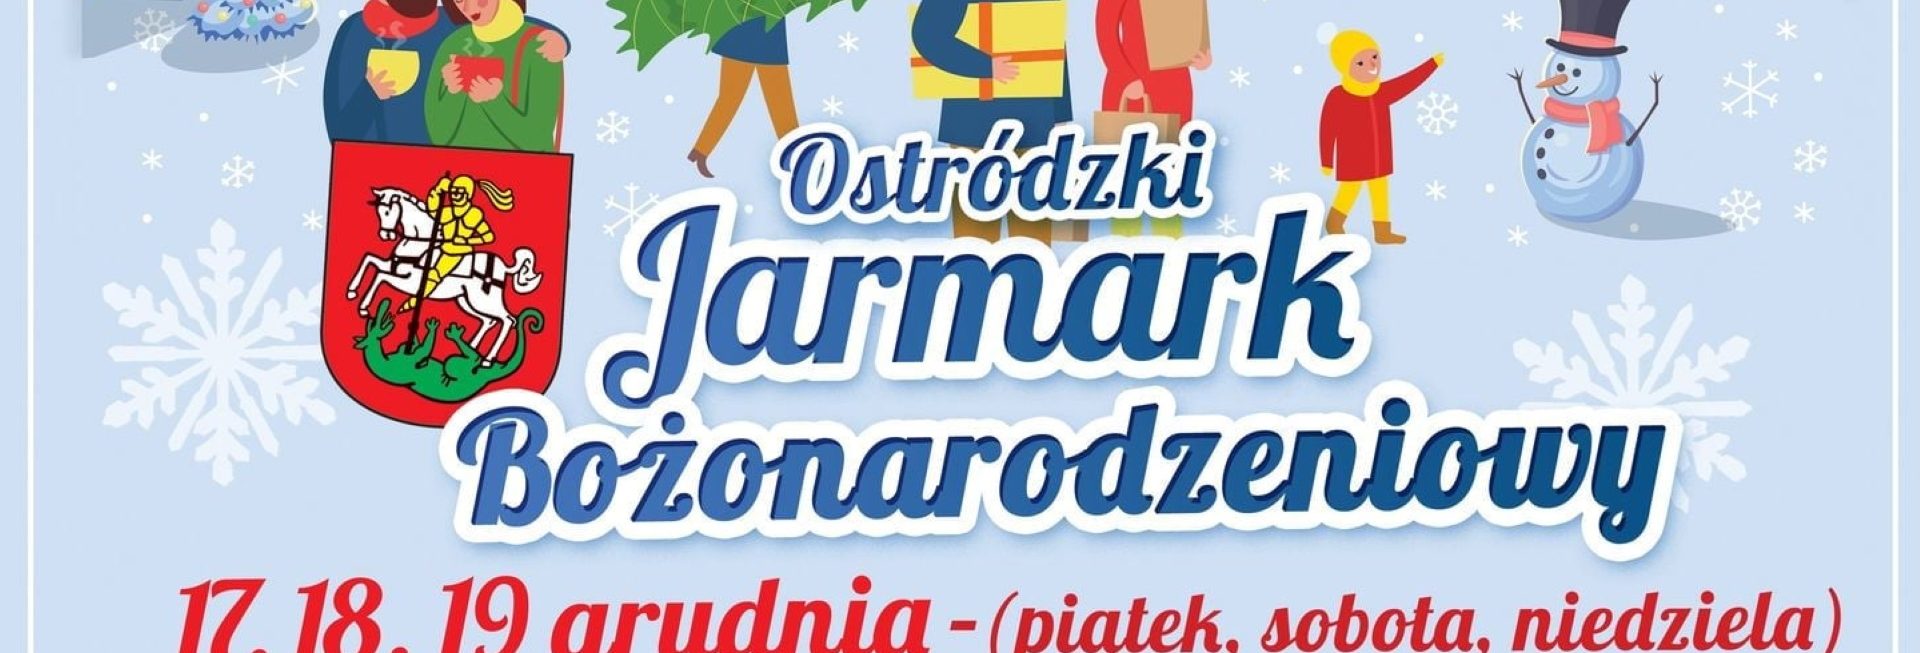 Plakat graficzny zapraszający do Ostródy na Ostródzki Jarmark Bożonarodzeniowy - Ostróda 2021.